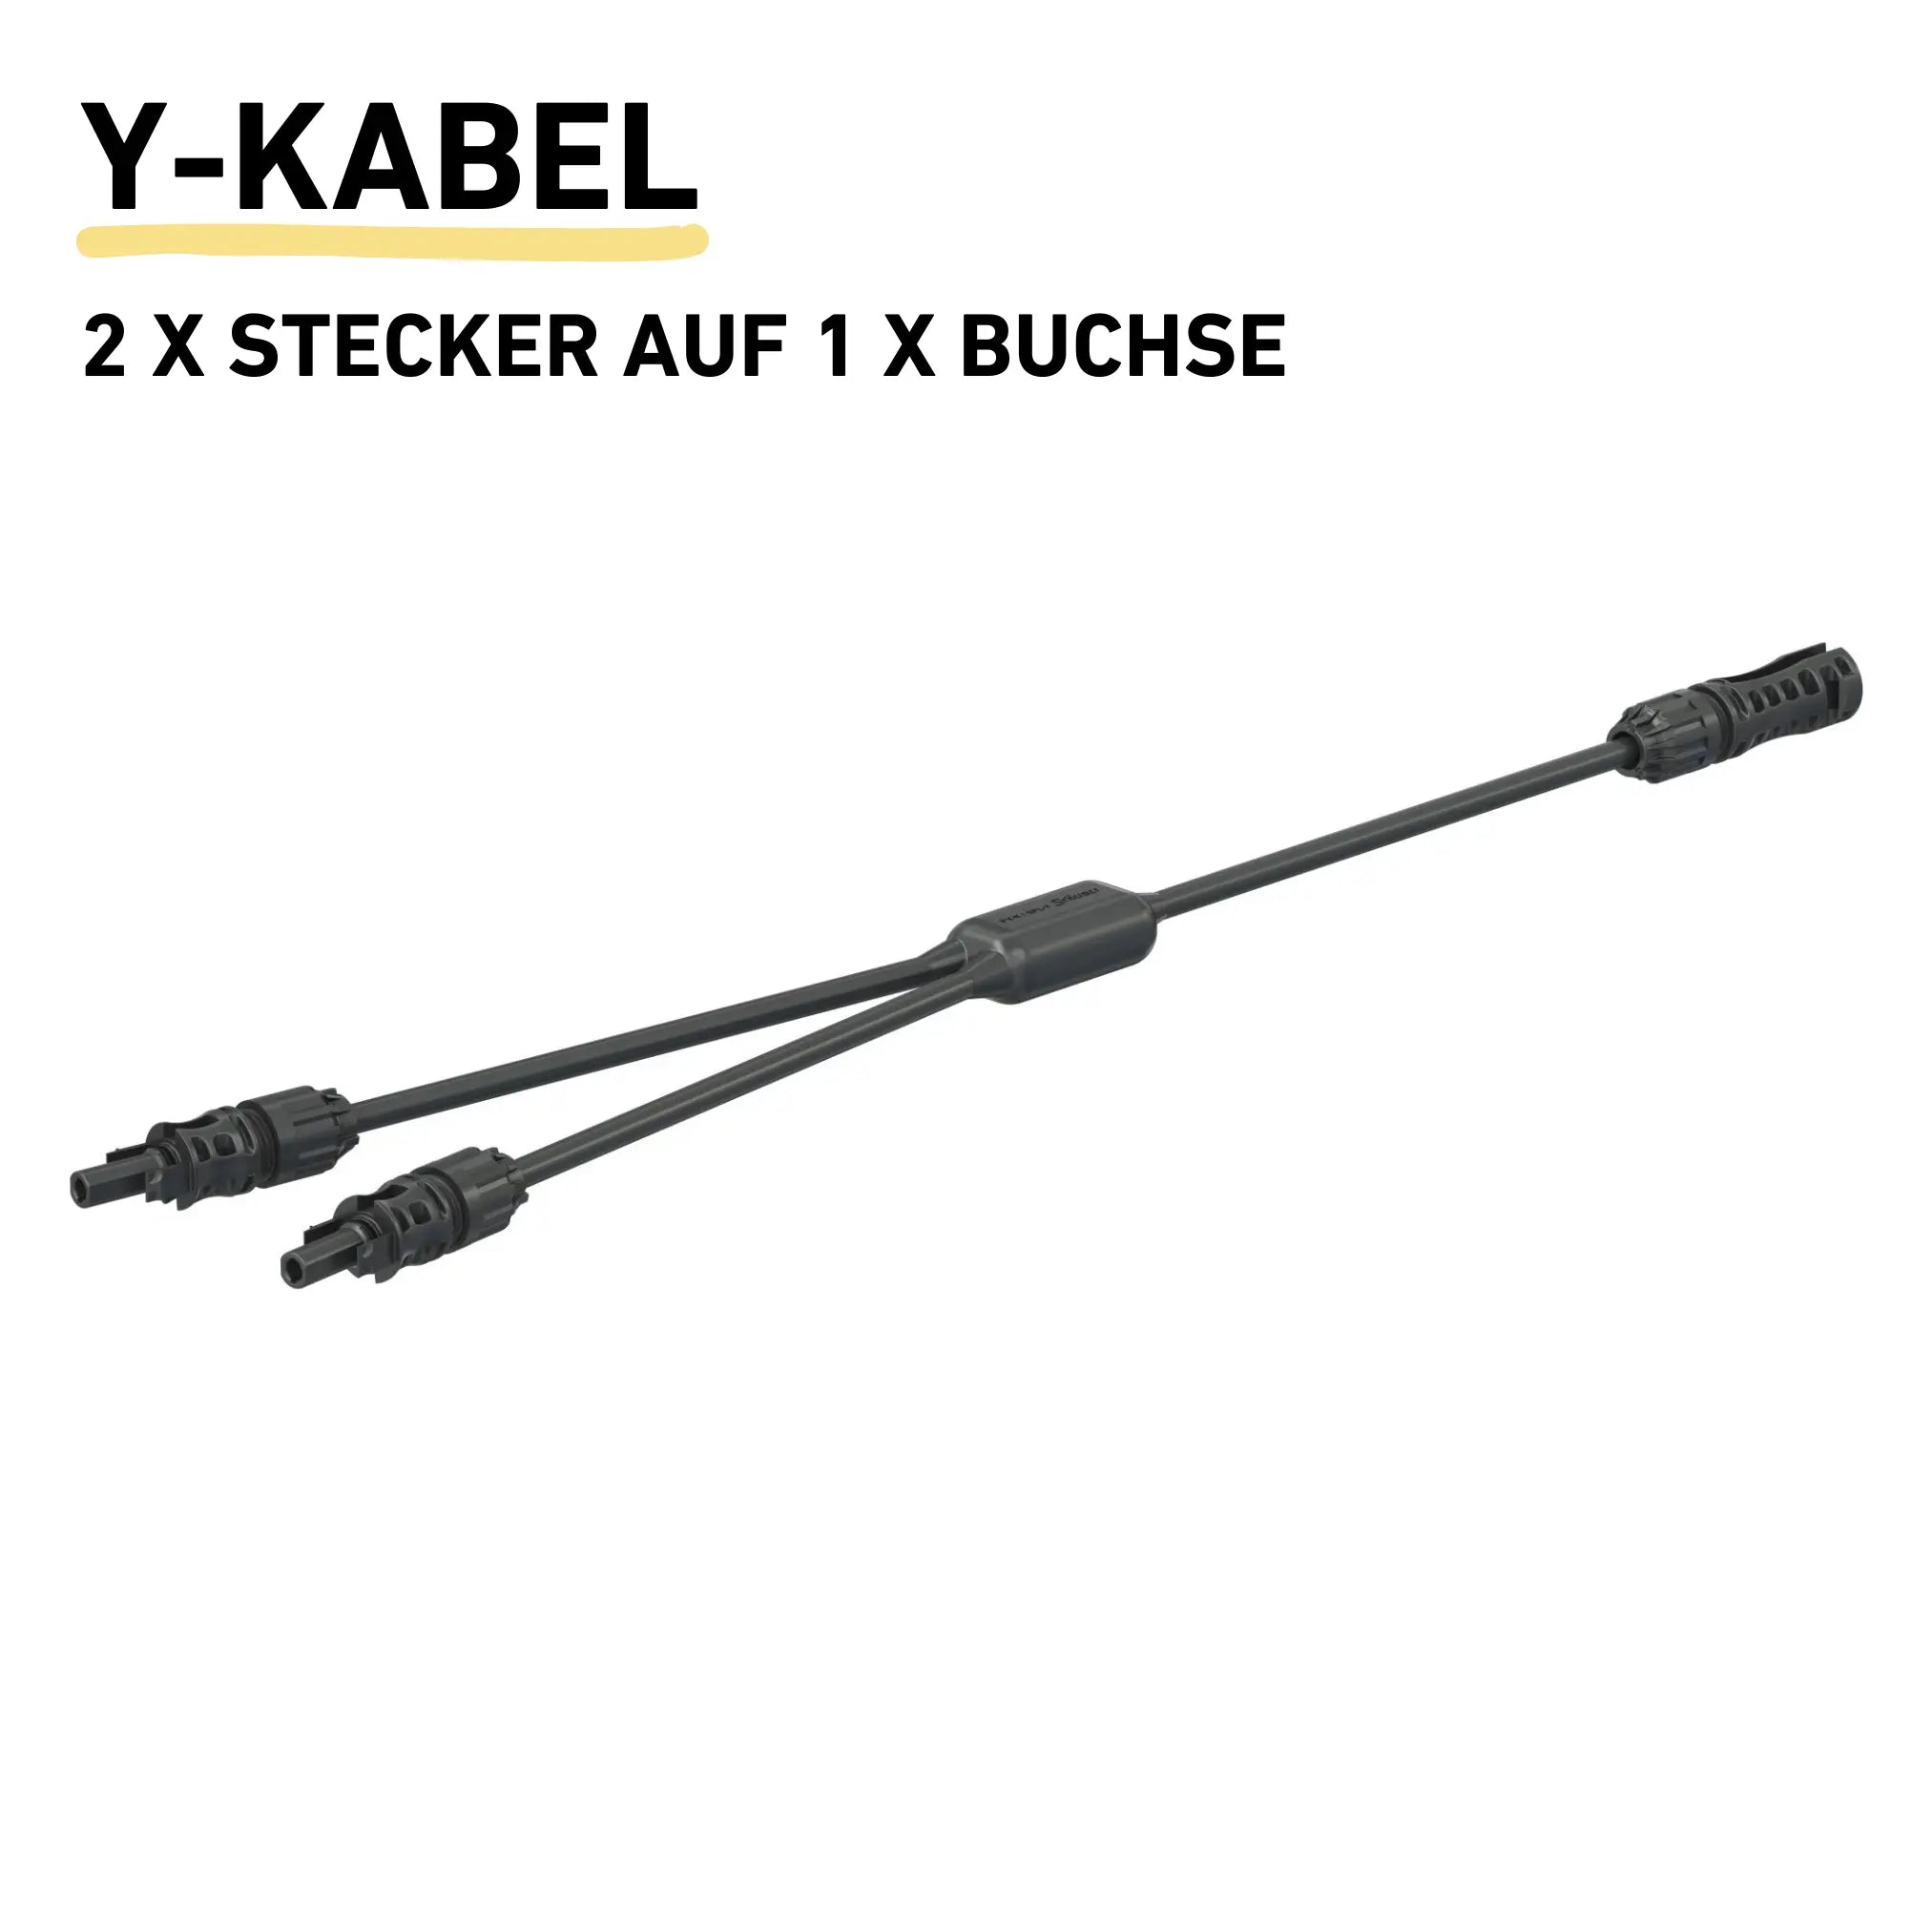 MC-4 Y Kabel 2x Stecker auf 1x Buchse Produktfoto